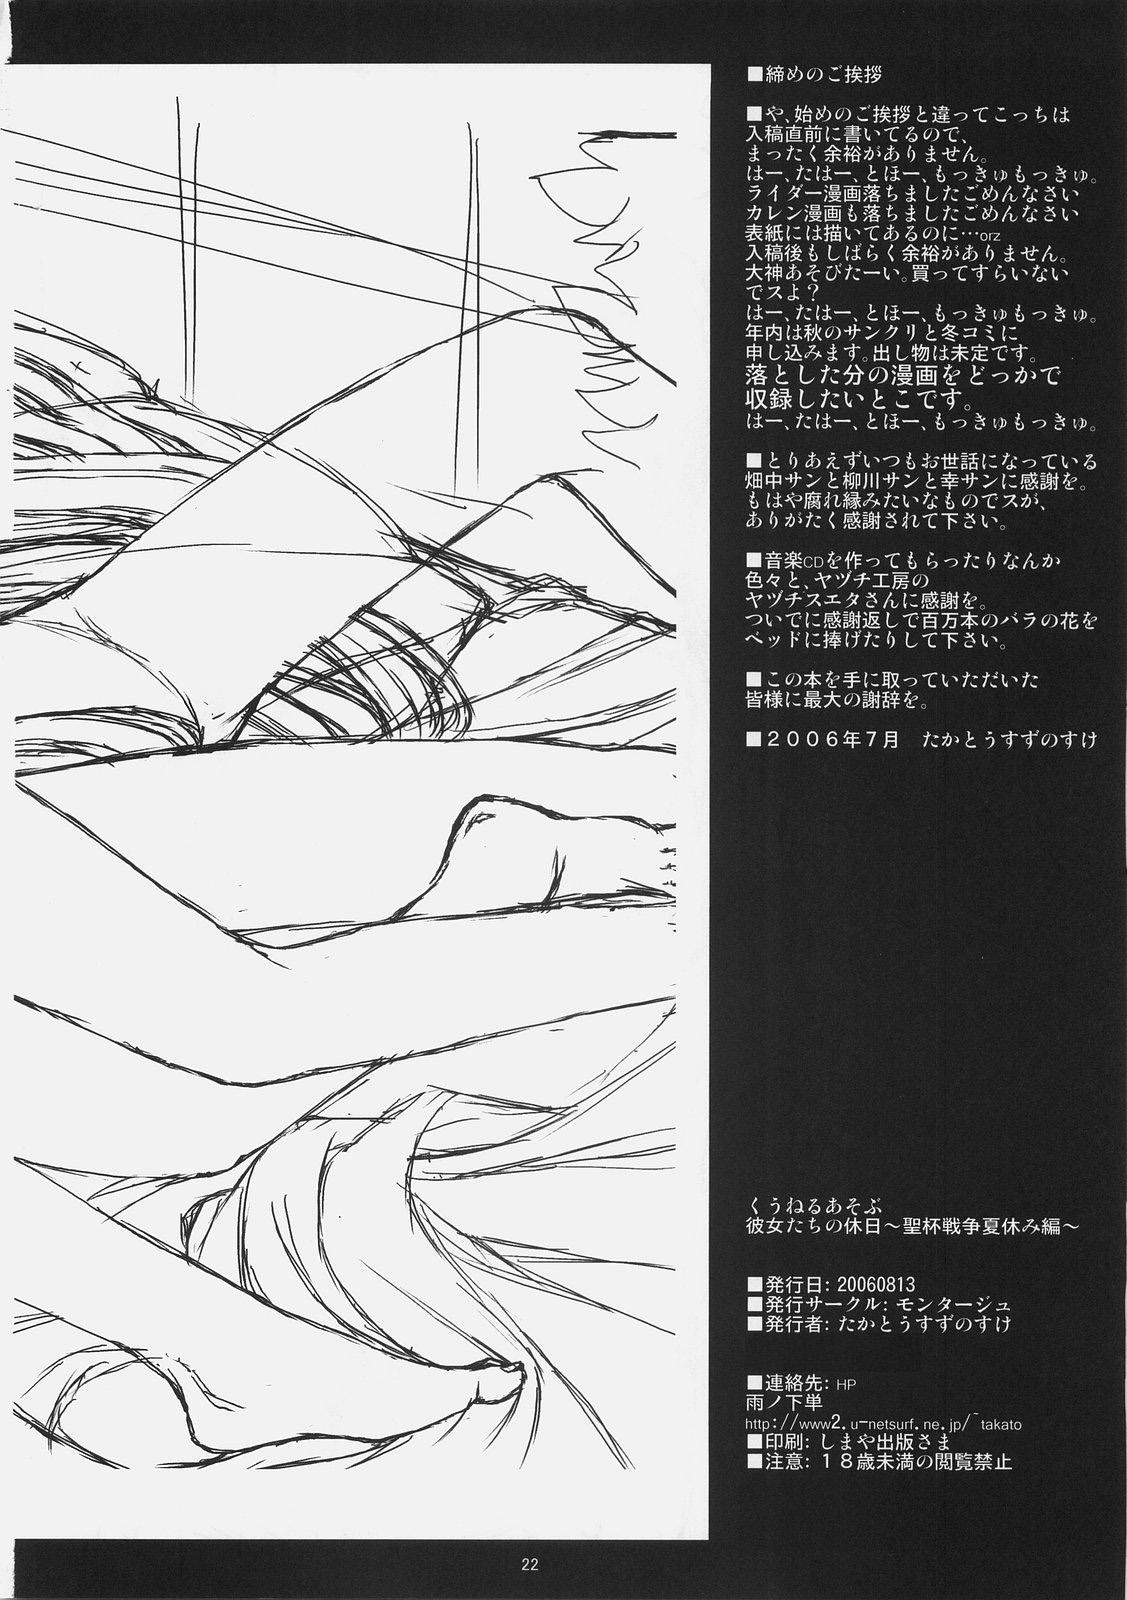 Livesex Kuuneru Asobu - Fate stay night Hot Couple Sex - Page 22